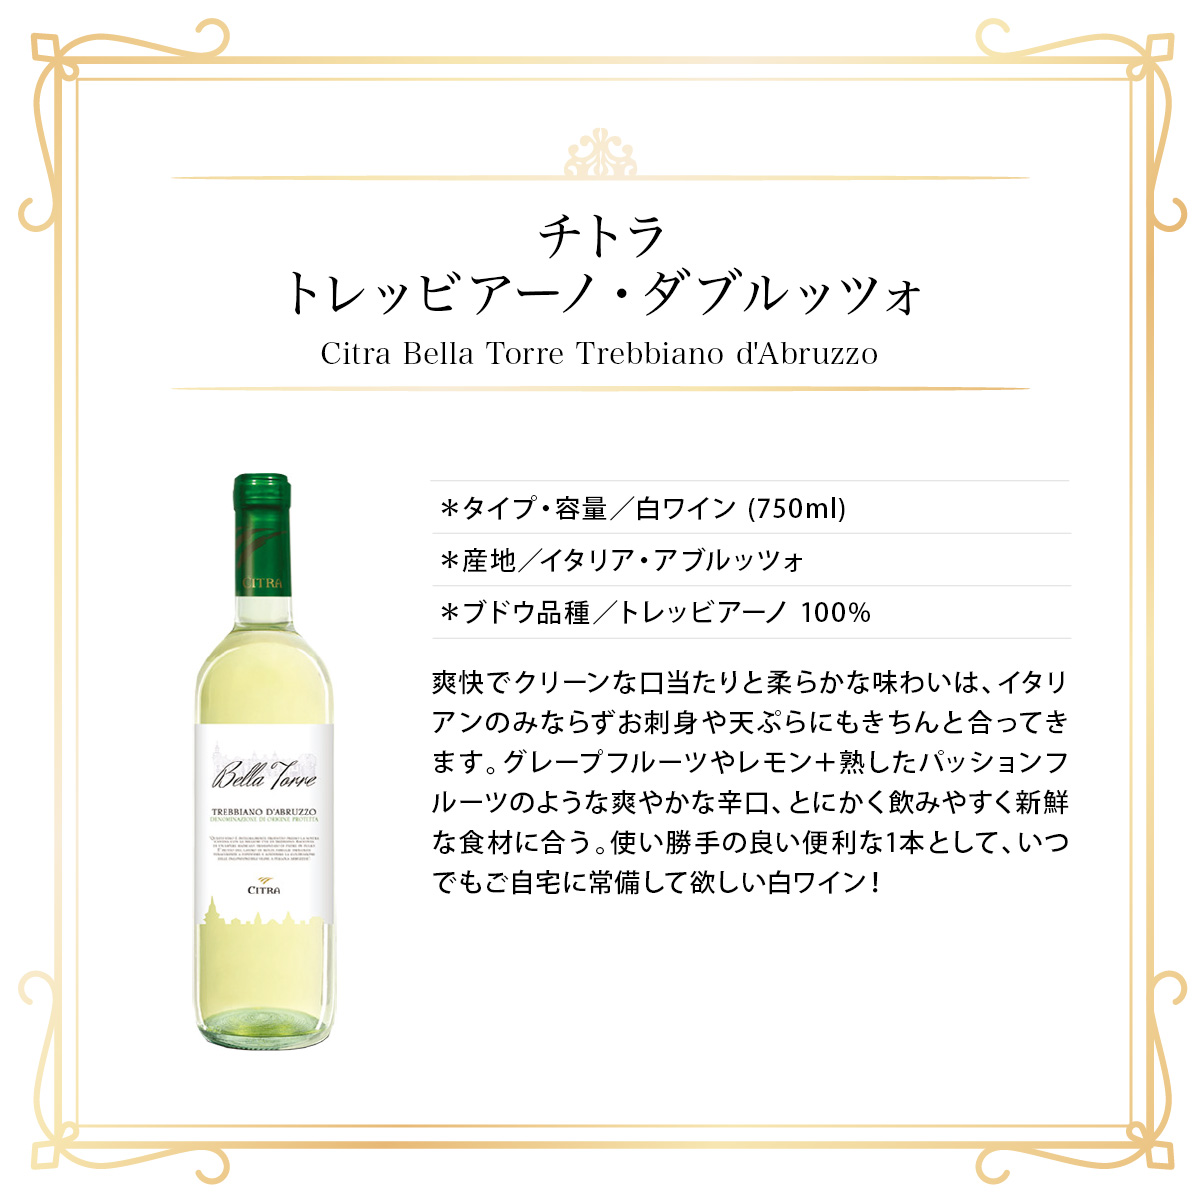 チトラ トレッビアーノ・ダブルッツォ(伊アブルッツォ州産 白ワイン750ml)